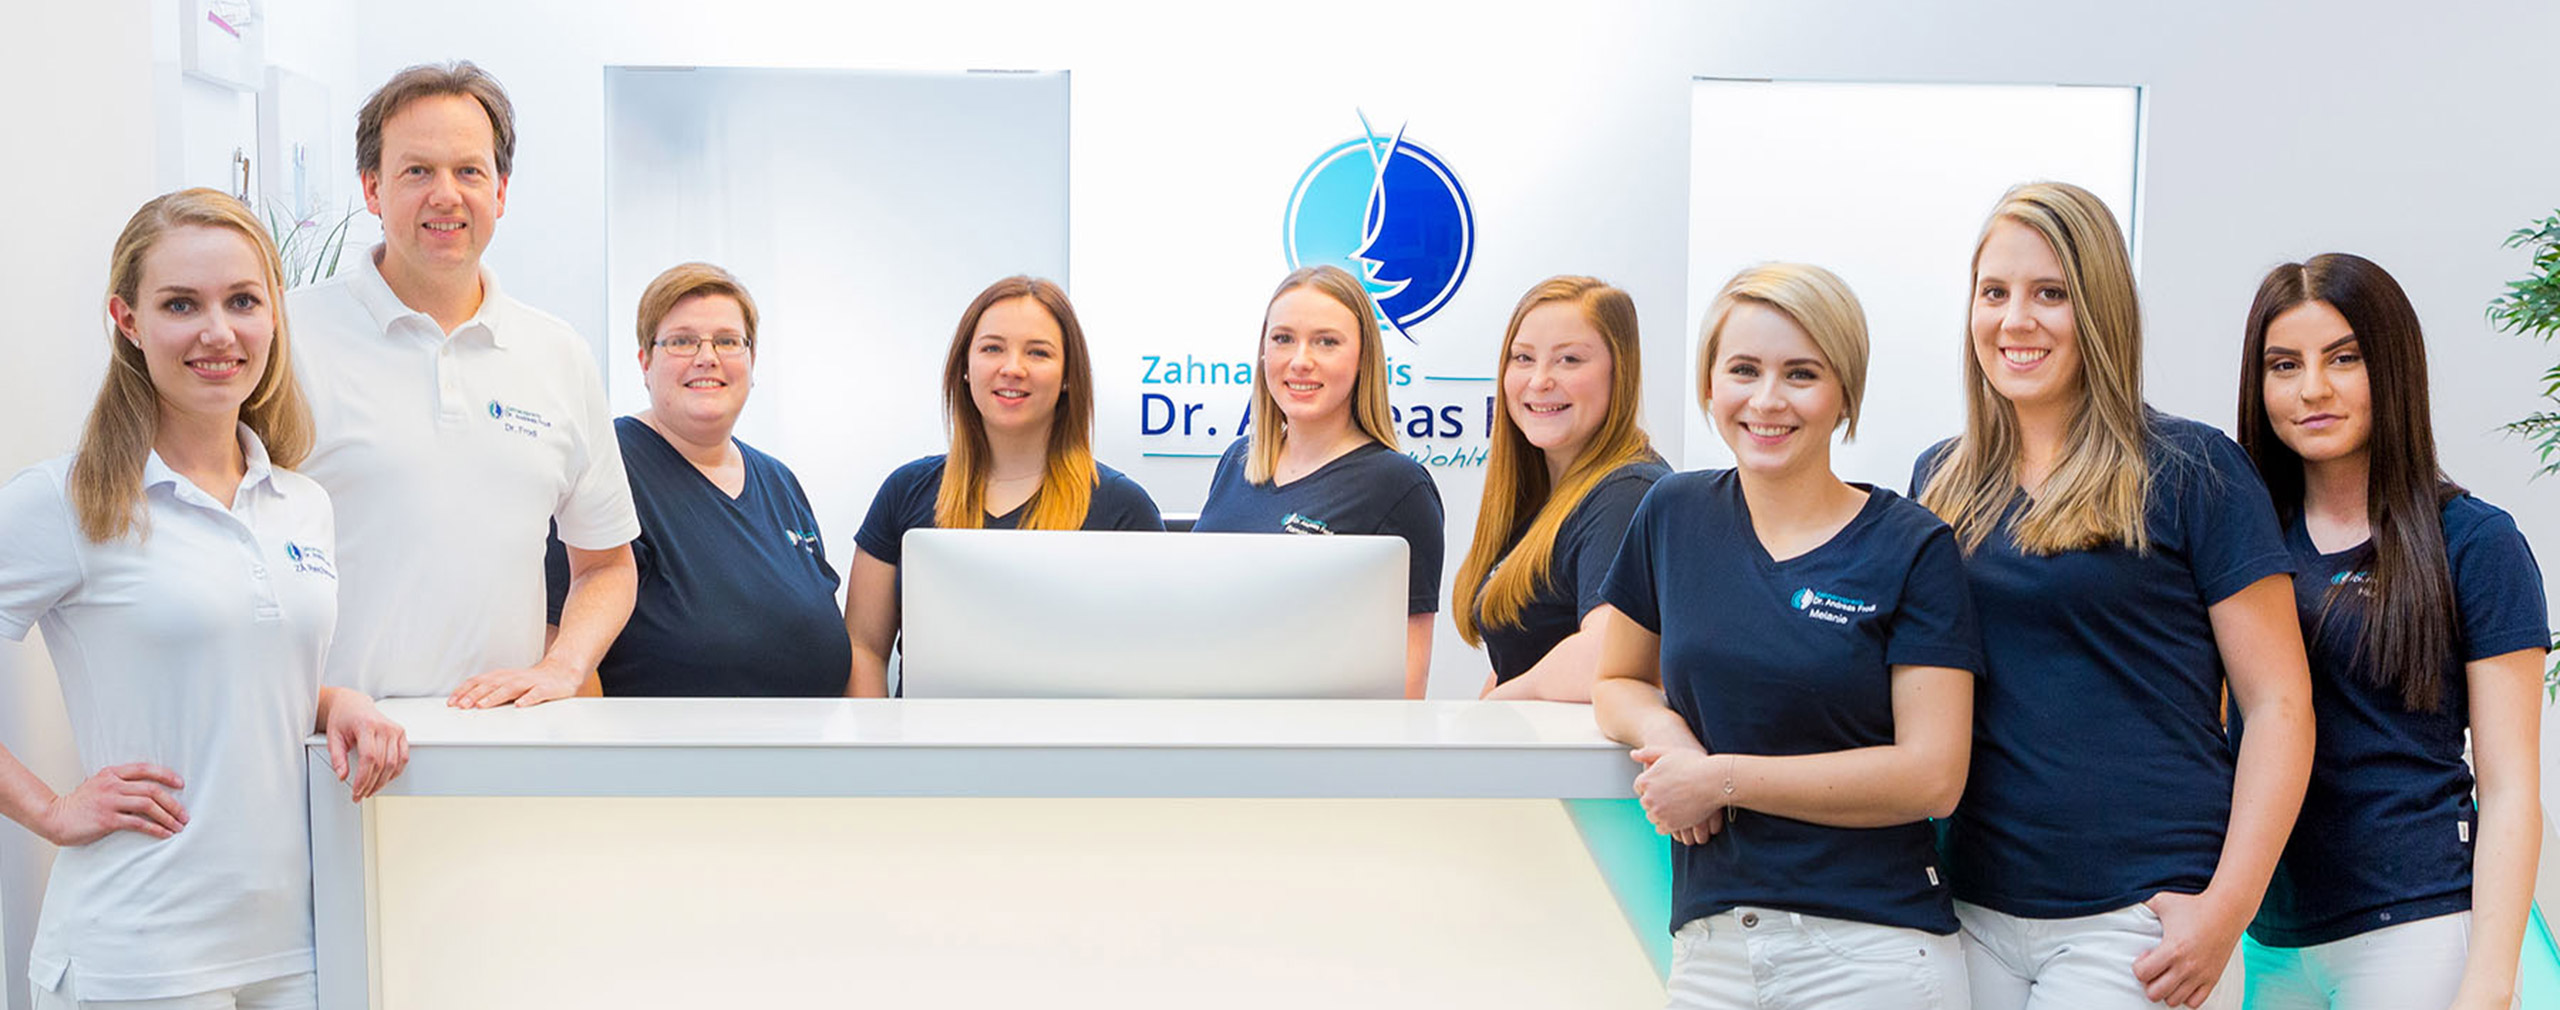 Zahnarzt Dr. Andreas Frodl mit seinen acht Mitarbeiterinnen am Tresen des Empfangs